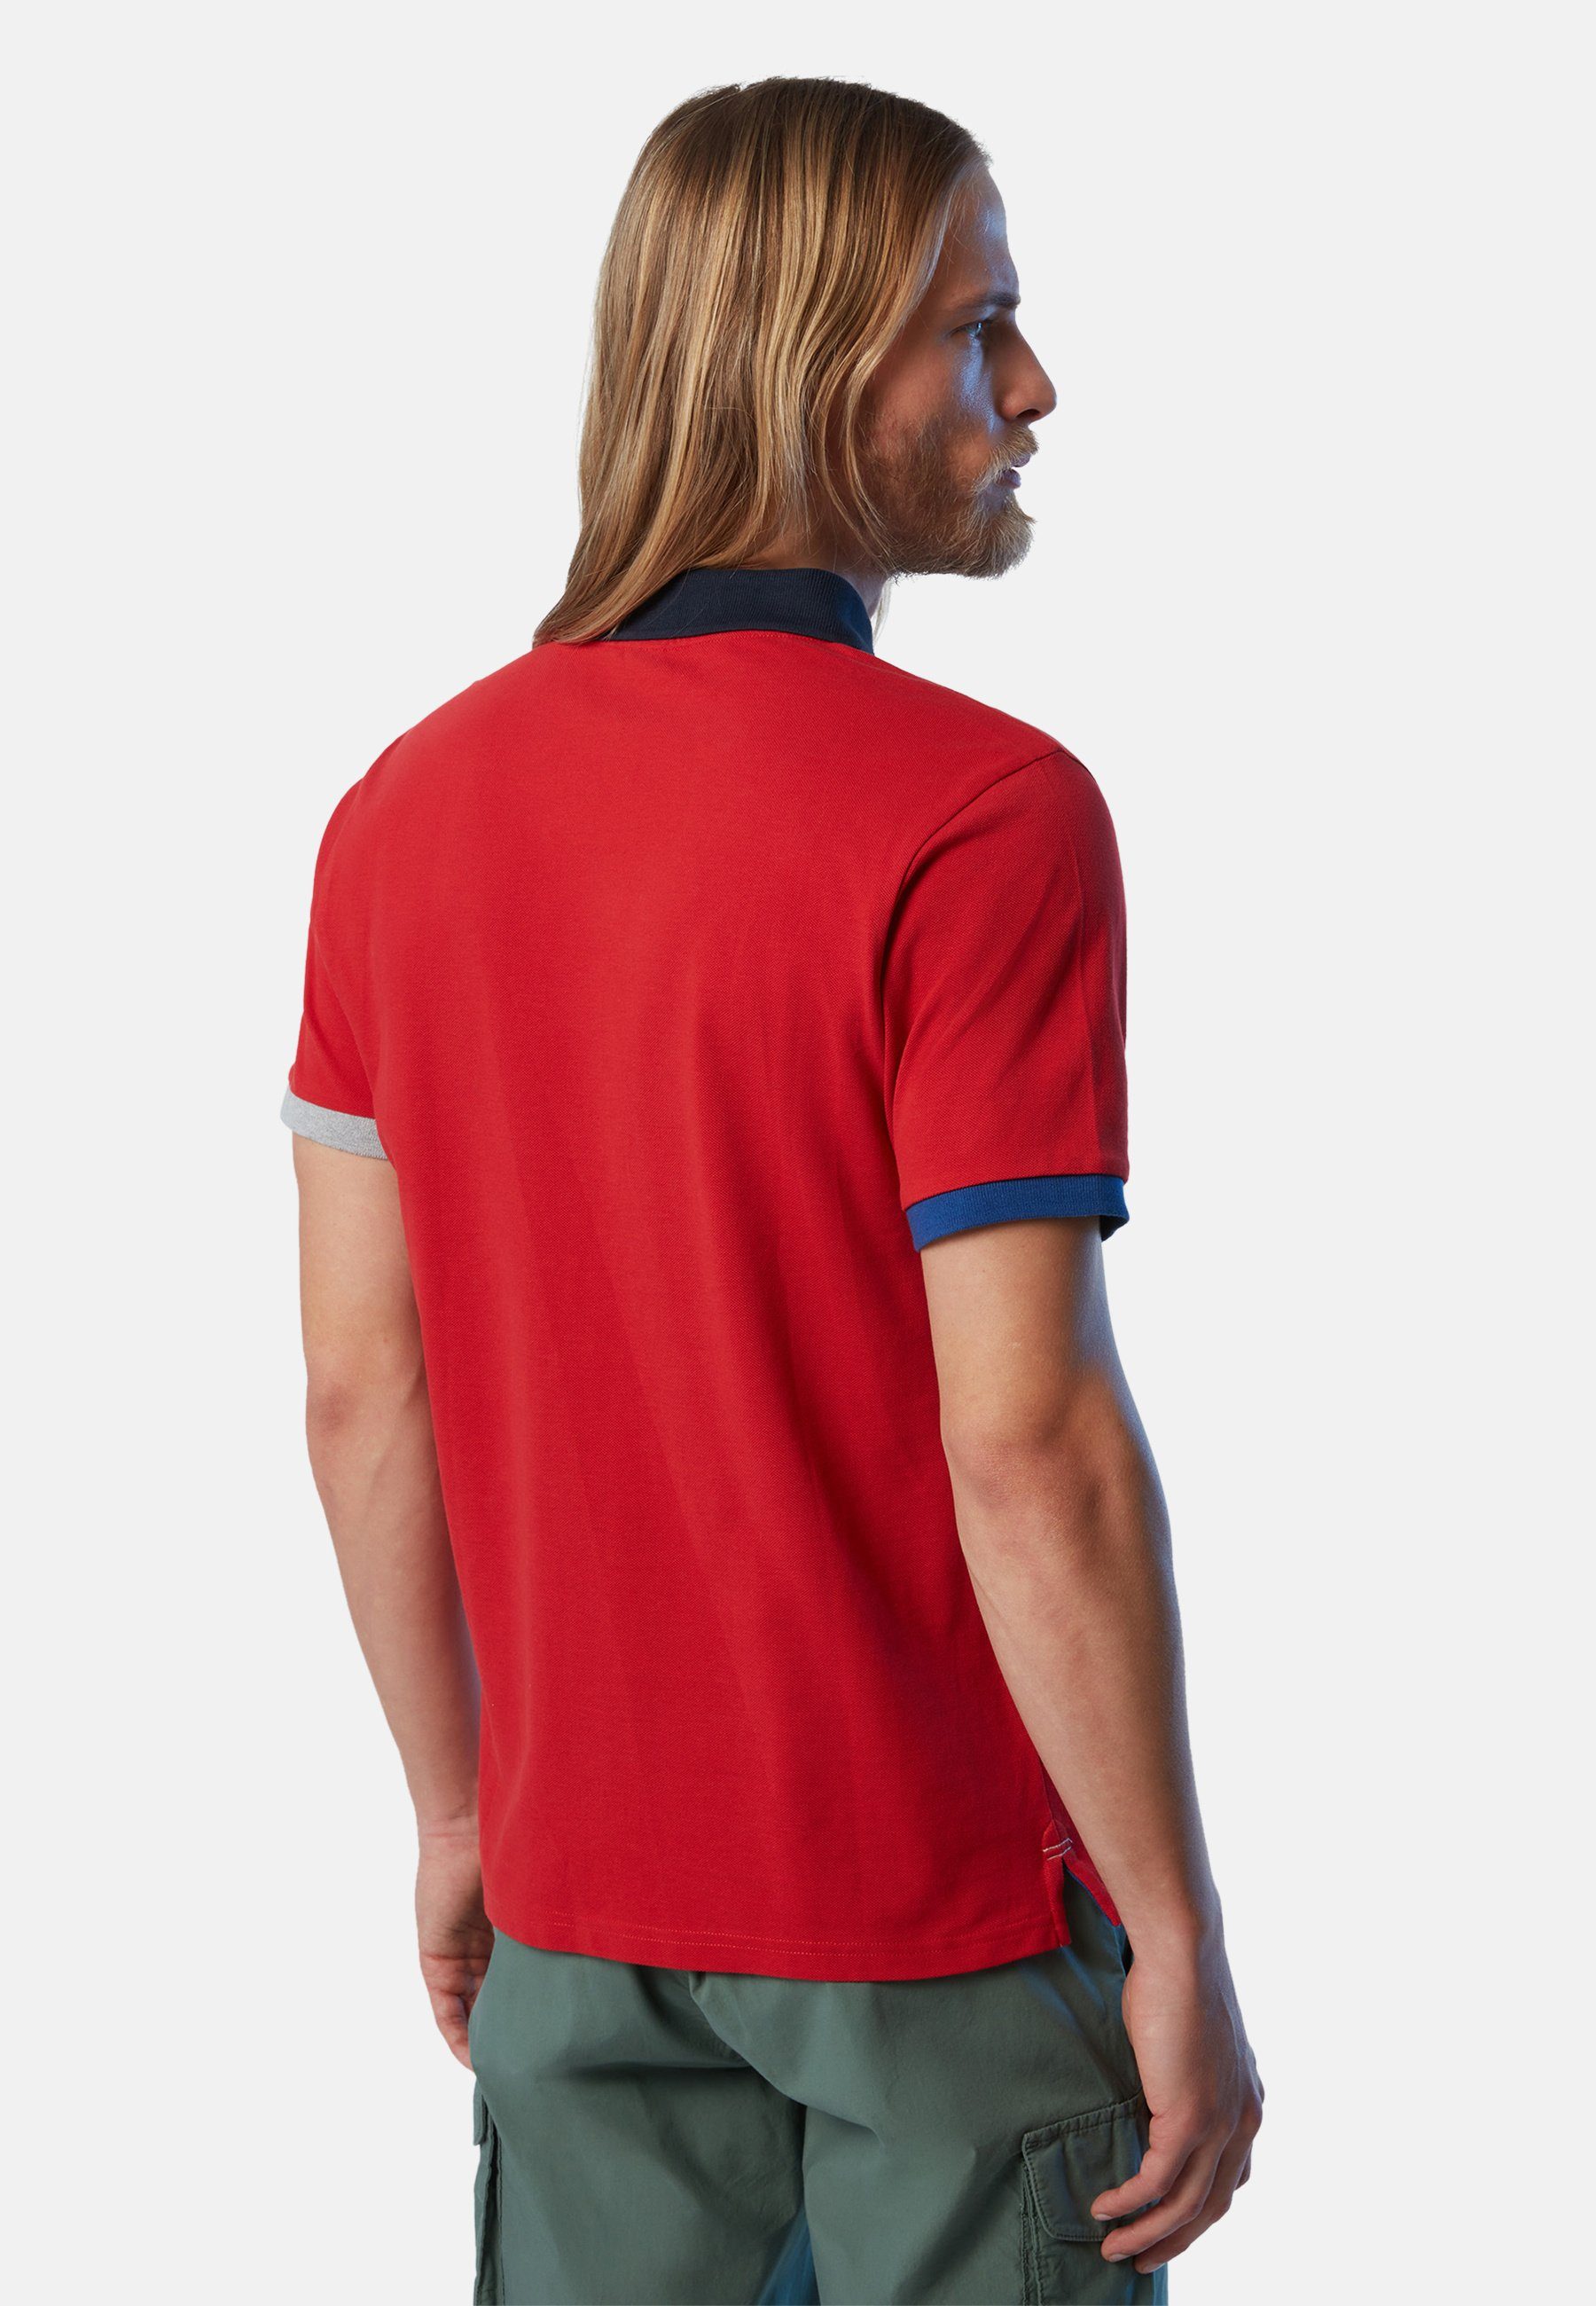 klassischem Design Bio-Baumwolle RED Poloshirt mit DARK Sails North aus Poloshirt